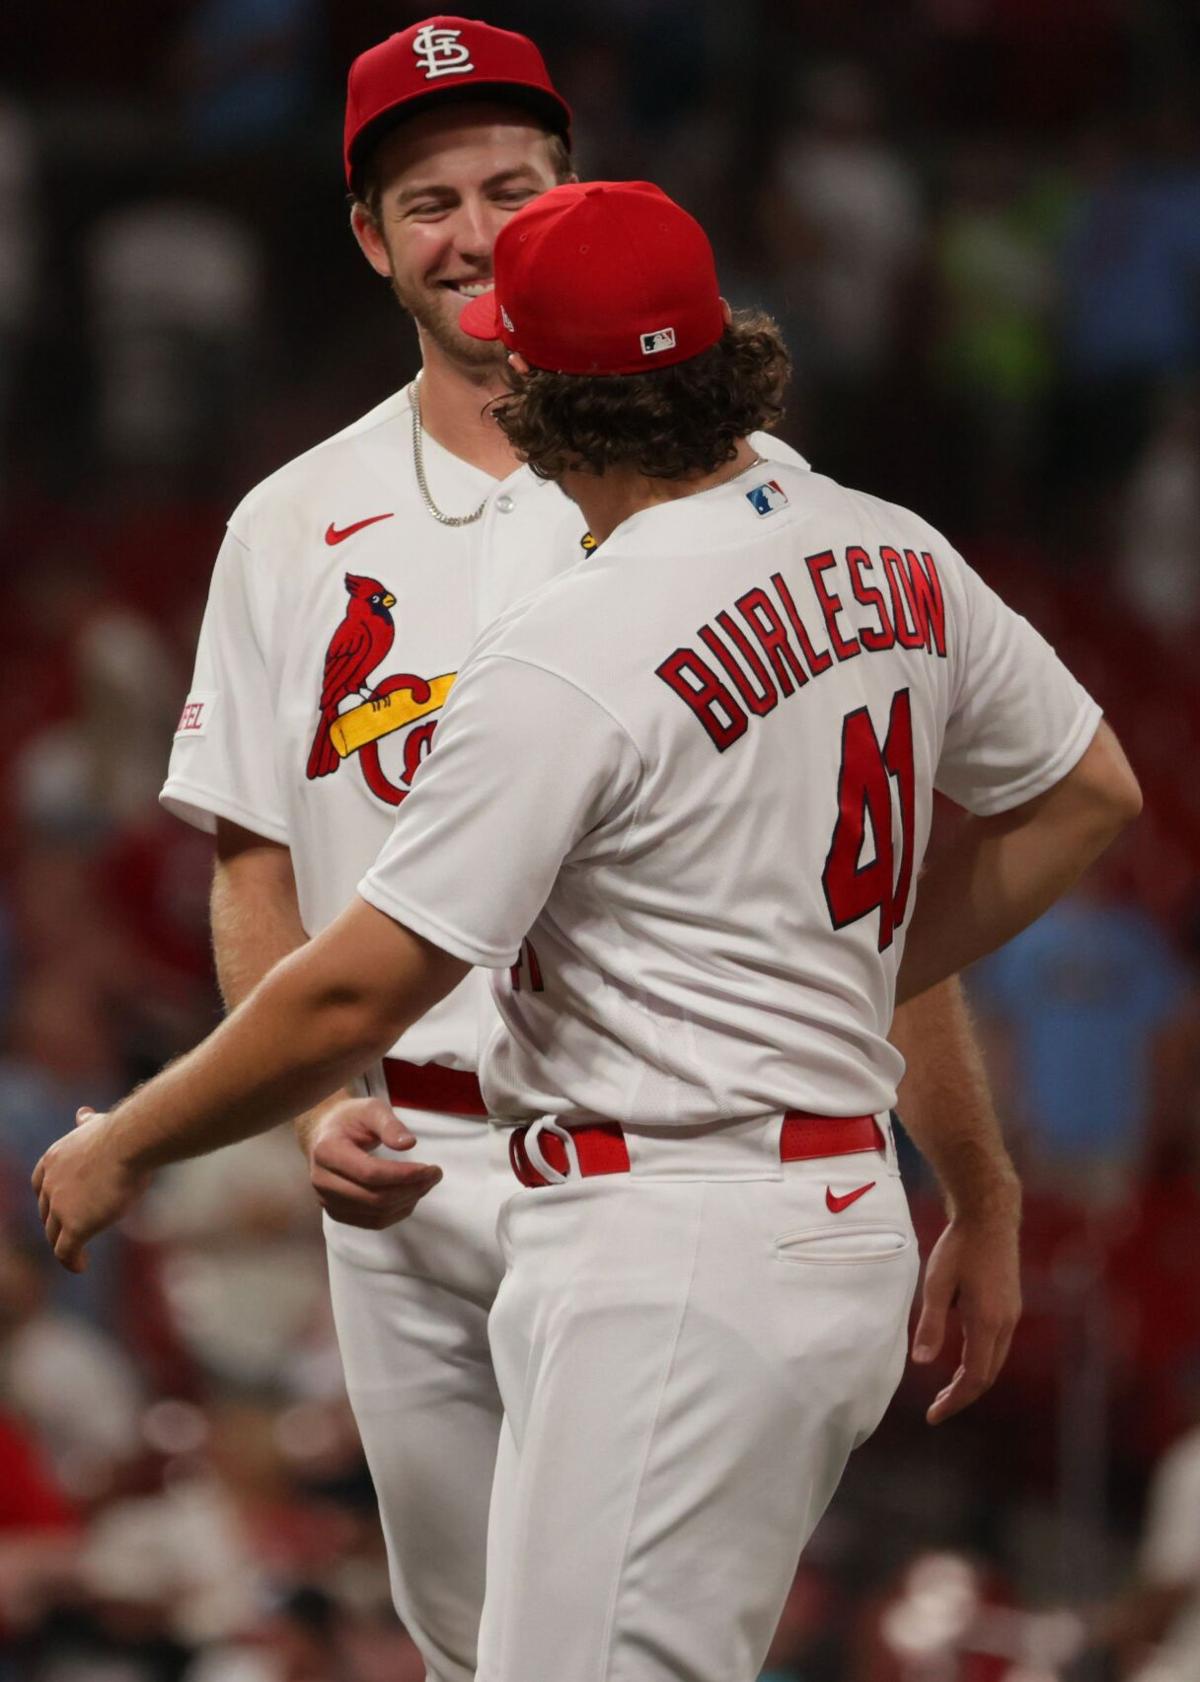 Ten Hochman: From 60K on Instagram to 609K, Cardinals' Lars